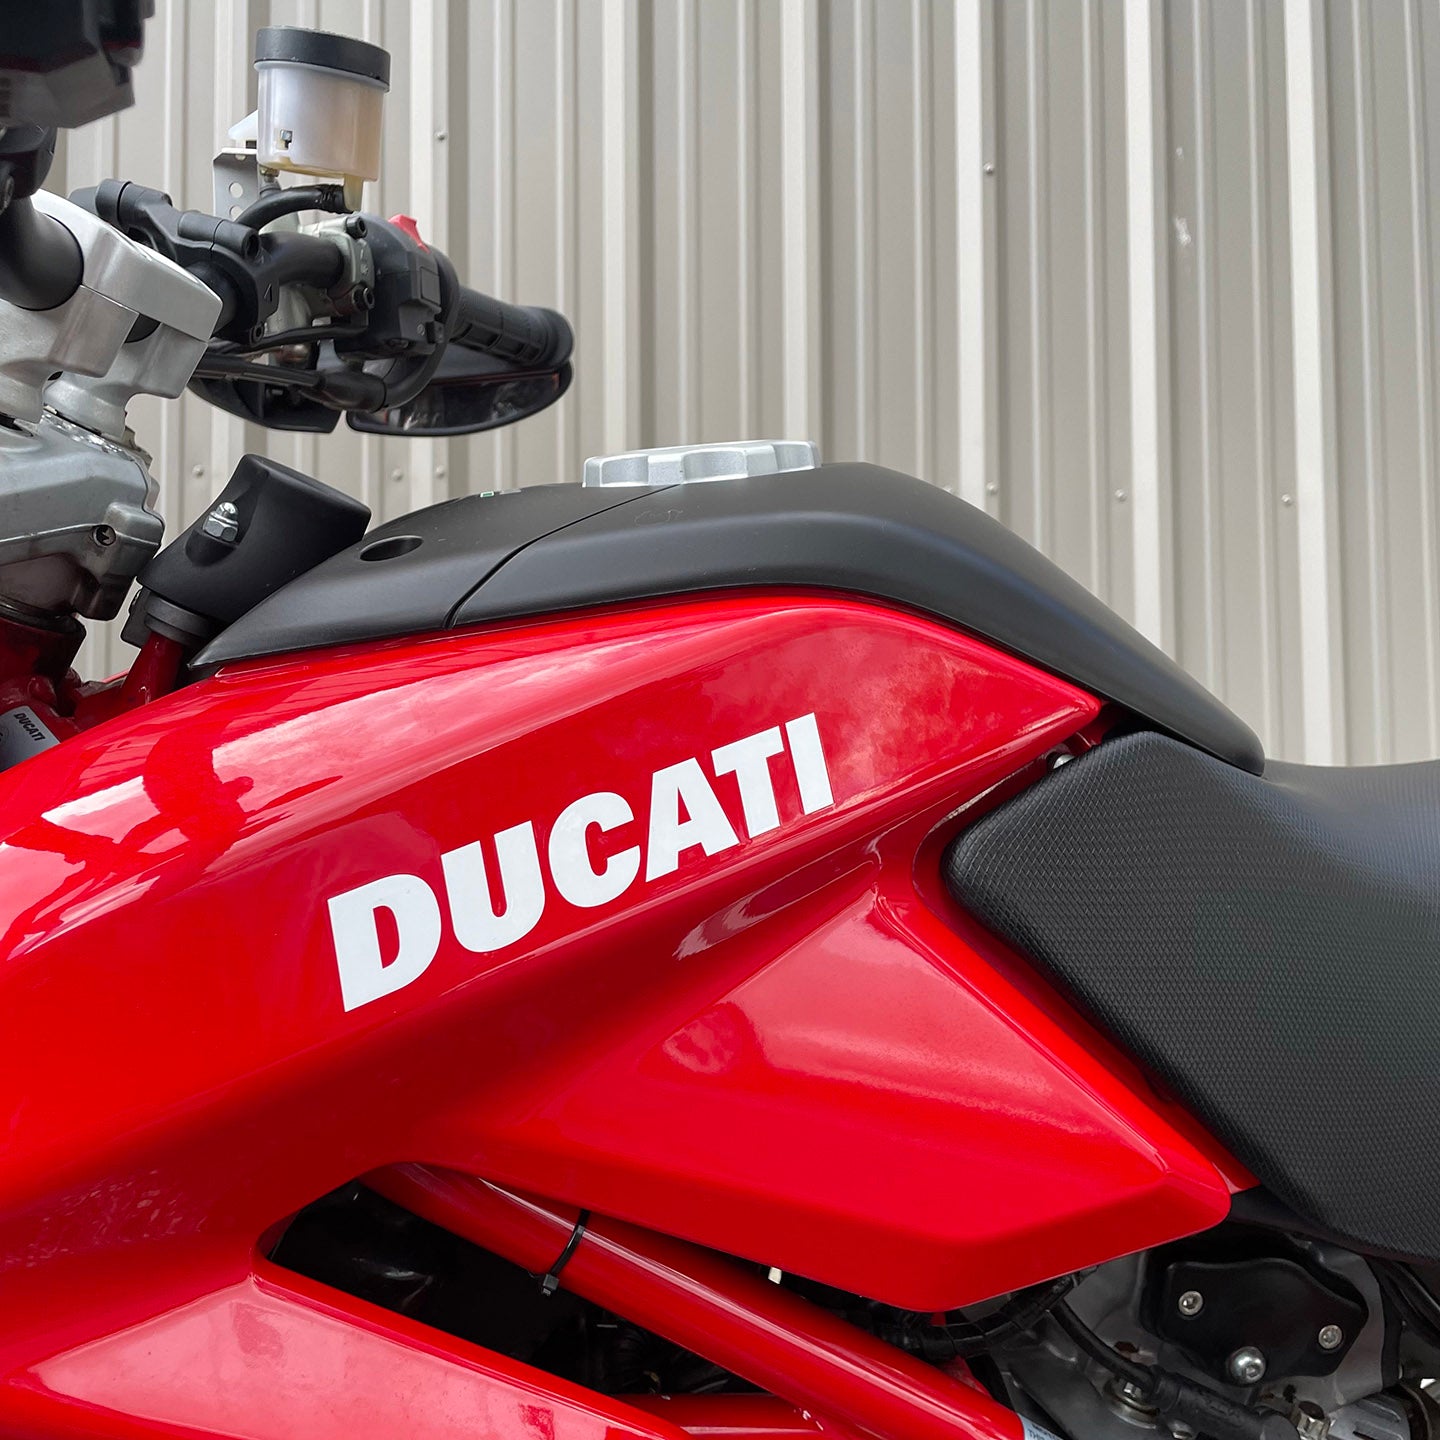 2008 Ducati Hypermotard 1100S (14,095 Miles)